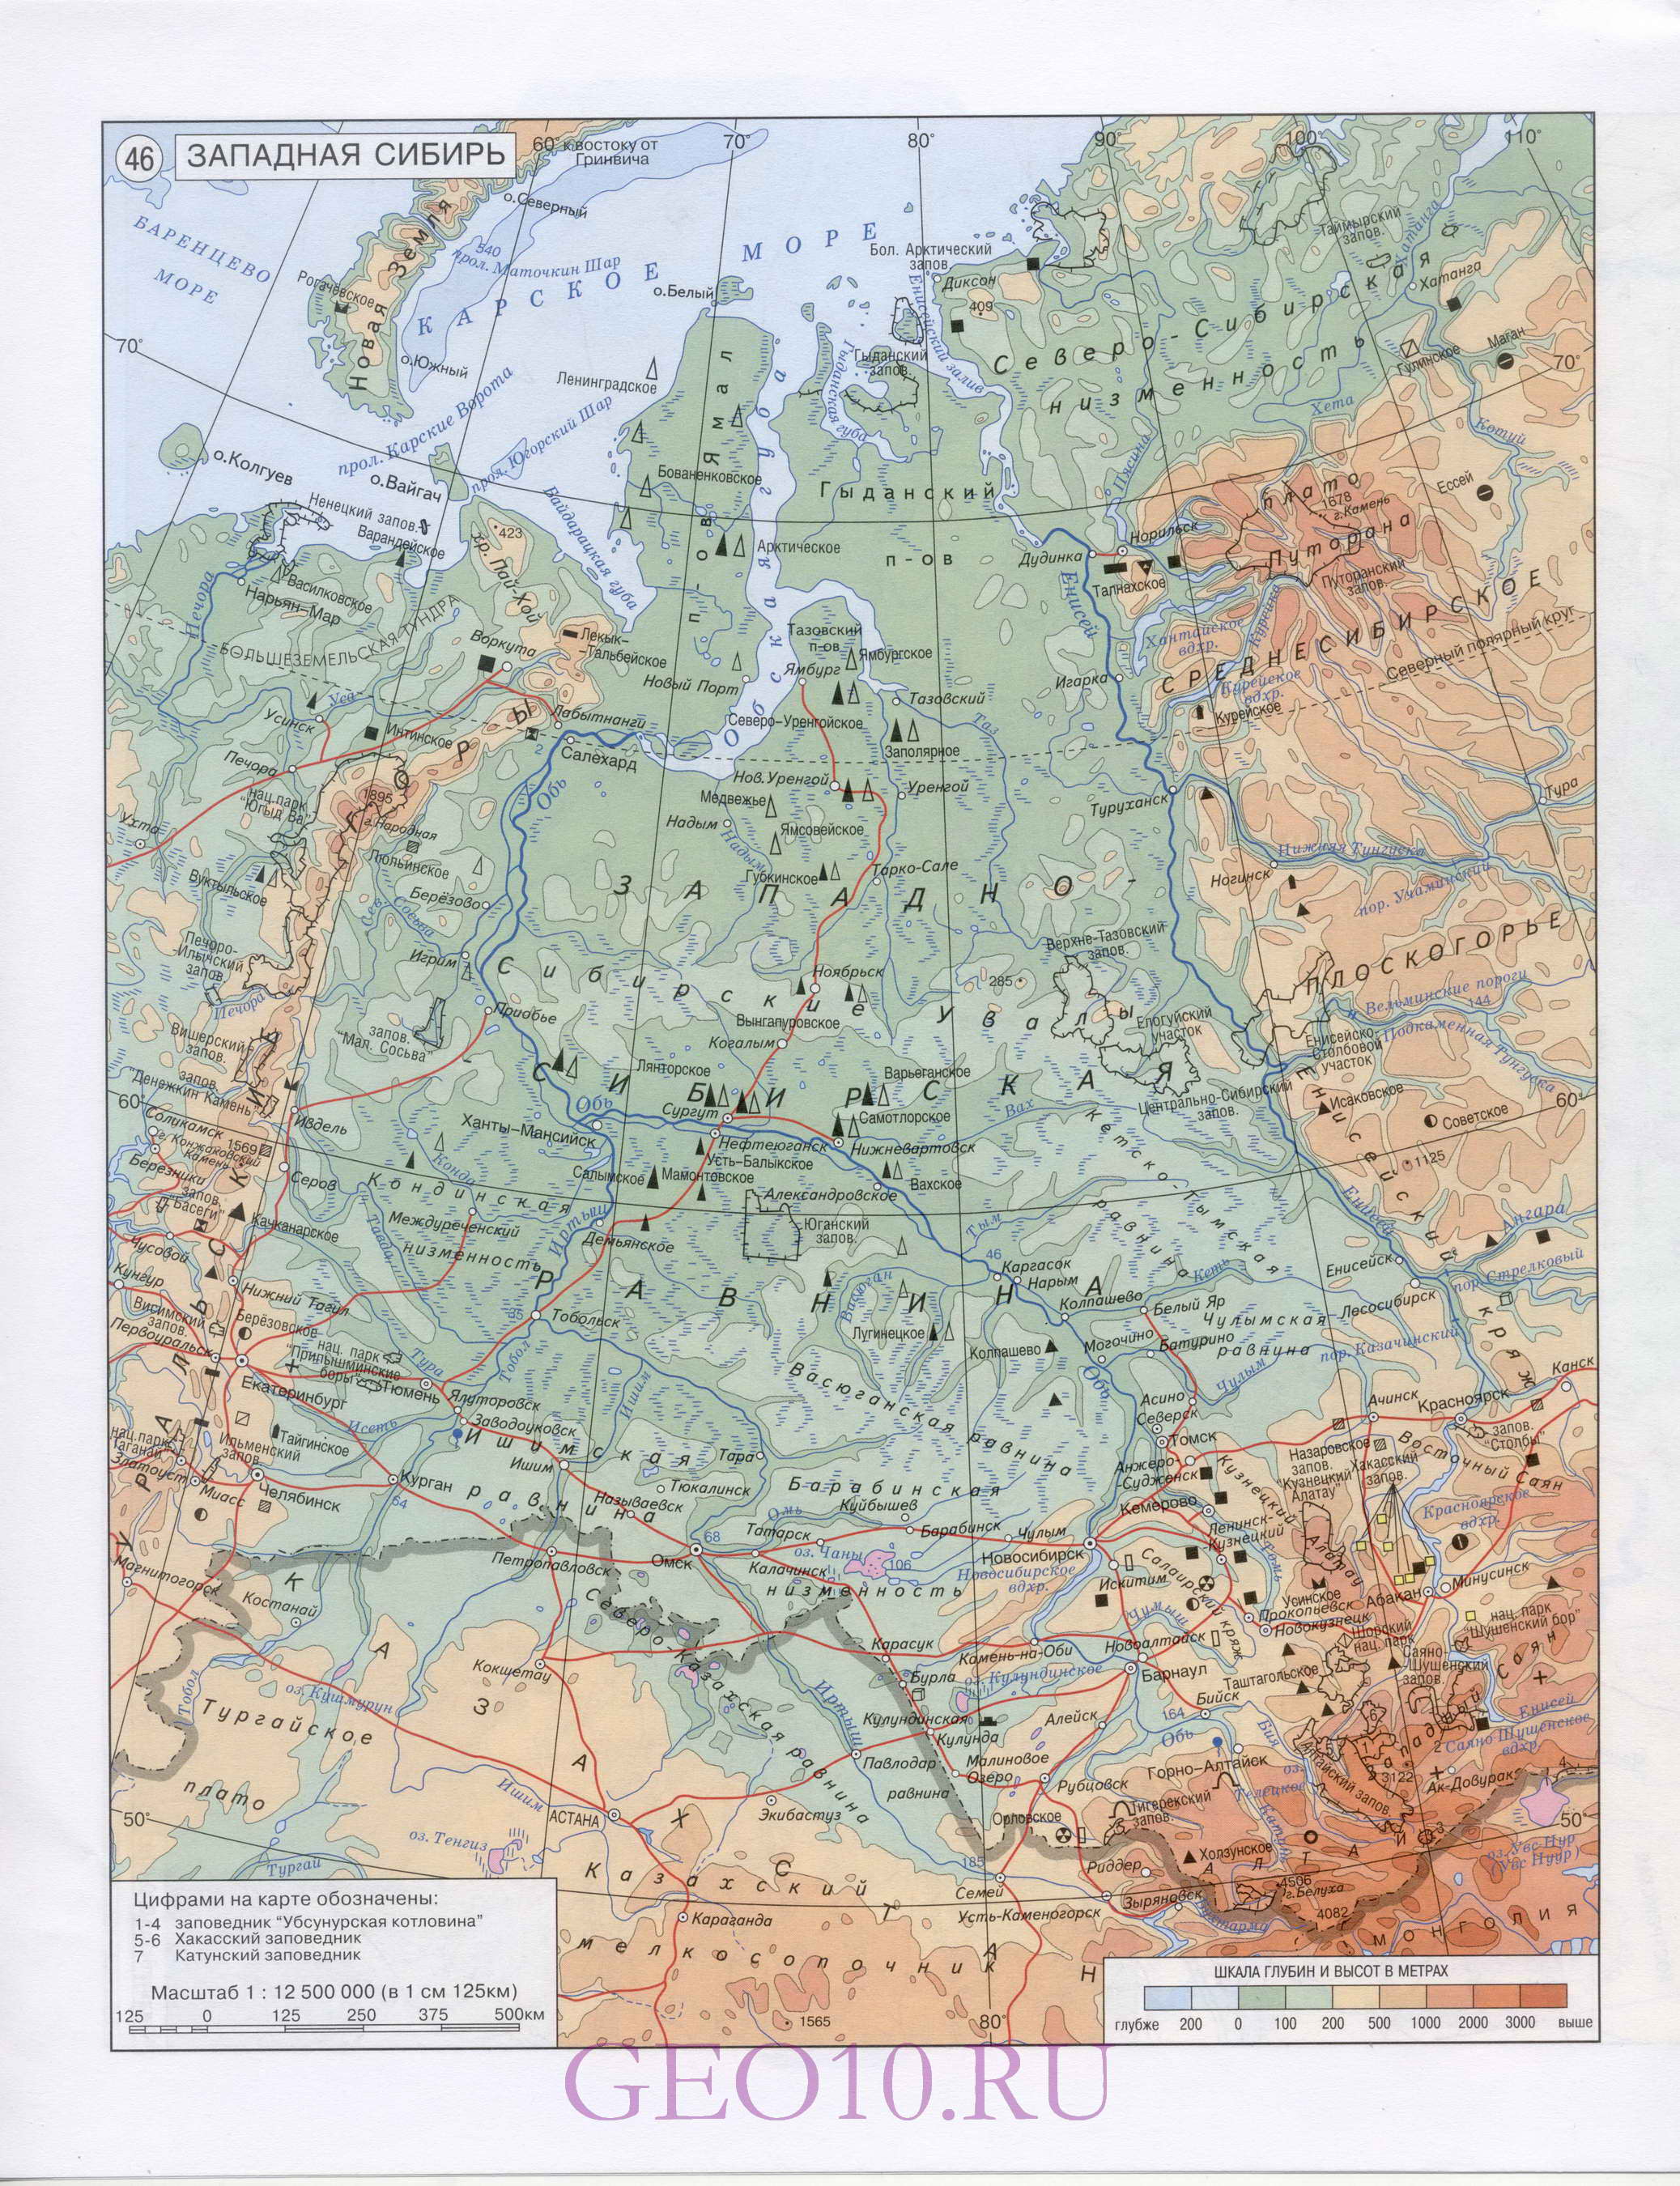 Карта Сибири. Географическая карта - Западная Сибирь и Восточная Сибирь. Большая подробная карта Западной Сибири и Восточной Сибири, A0 - 